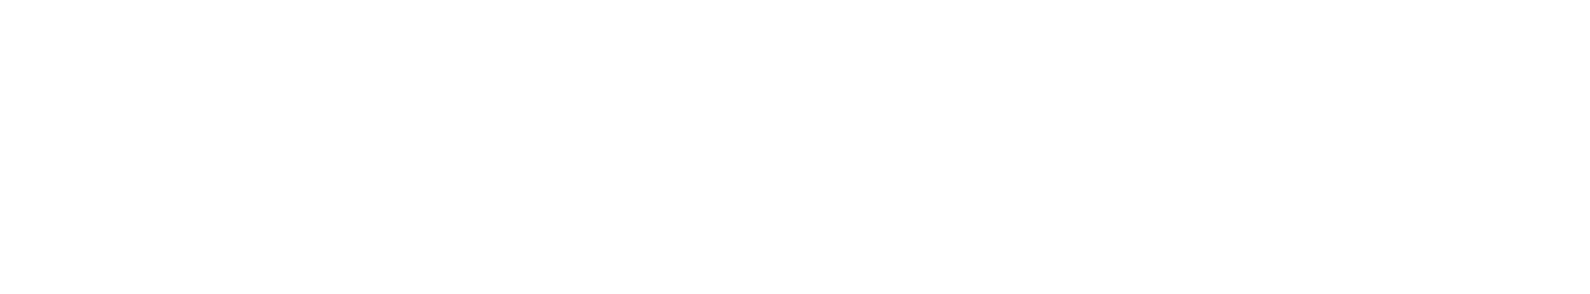 Meggitt logo large for dark backgrounds (transparent PNG)